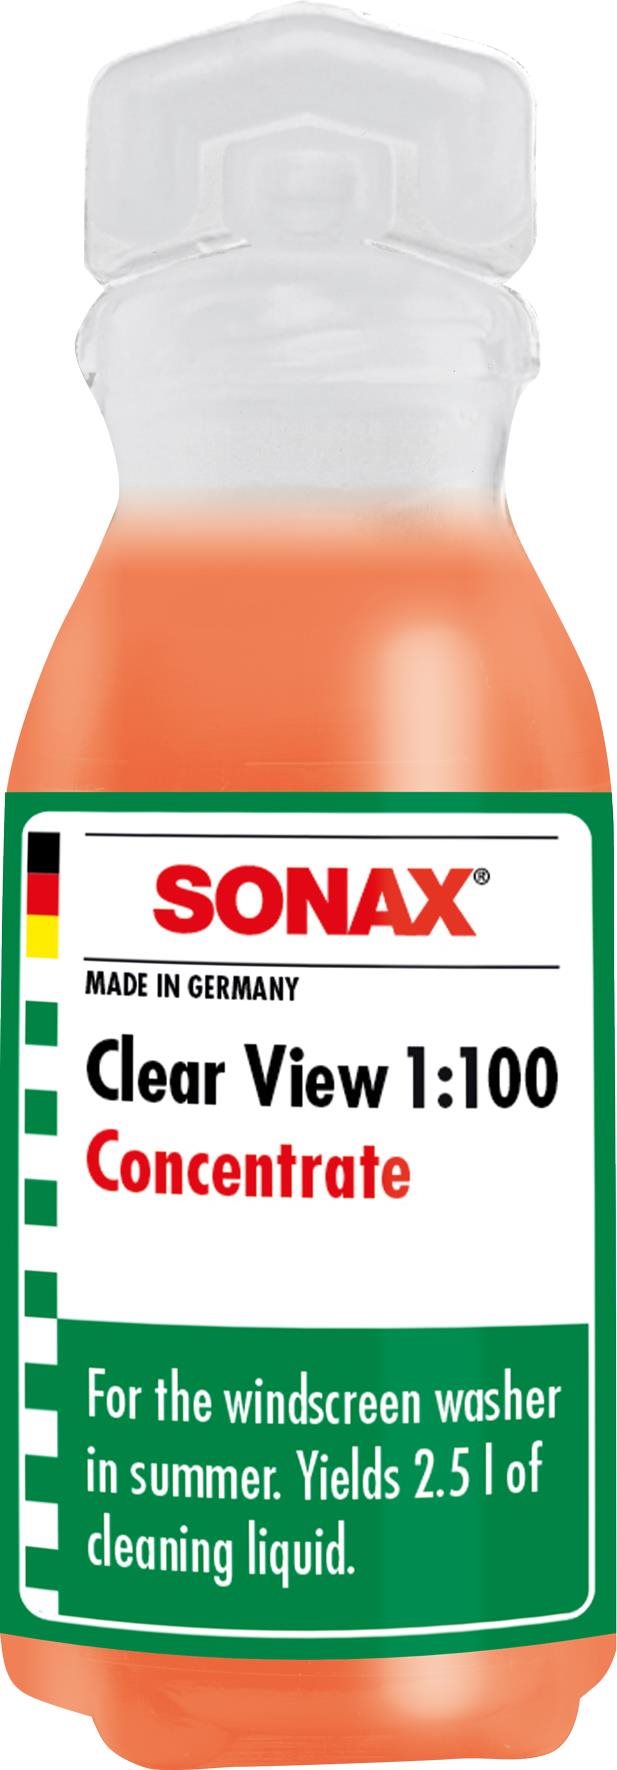 Szélvédőmosó folyadék Sonax Nyári szélvédőmosó folyadék koncentrátum 1:100 0